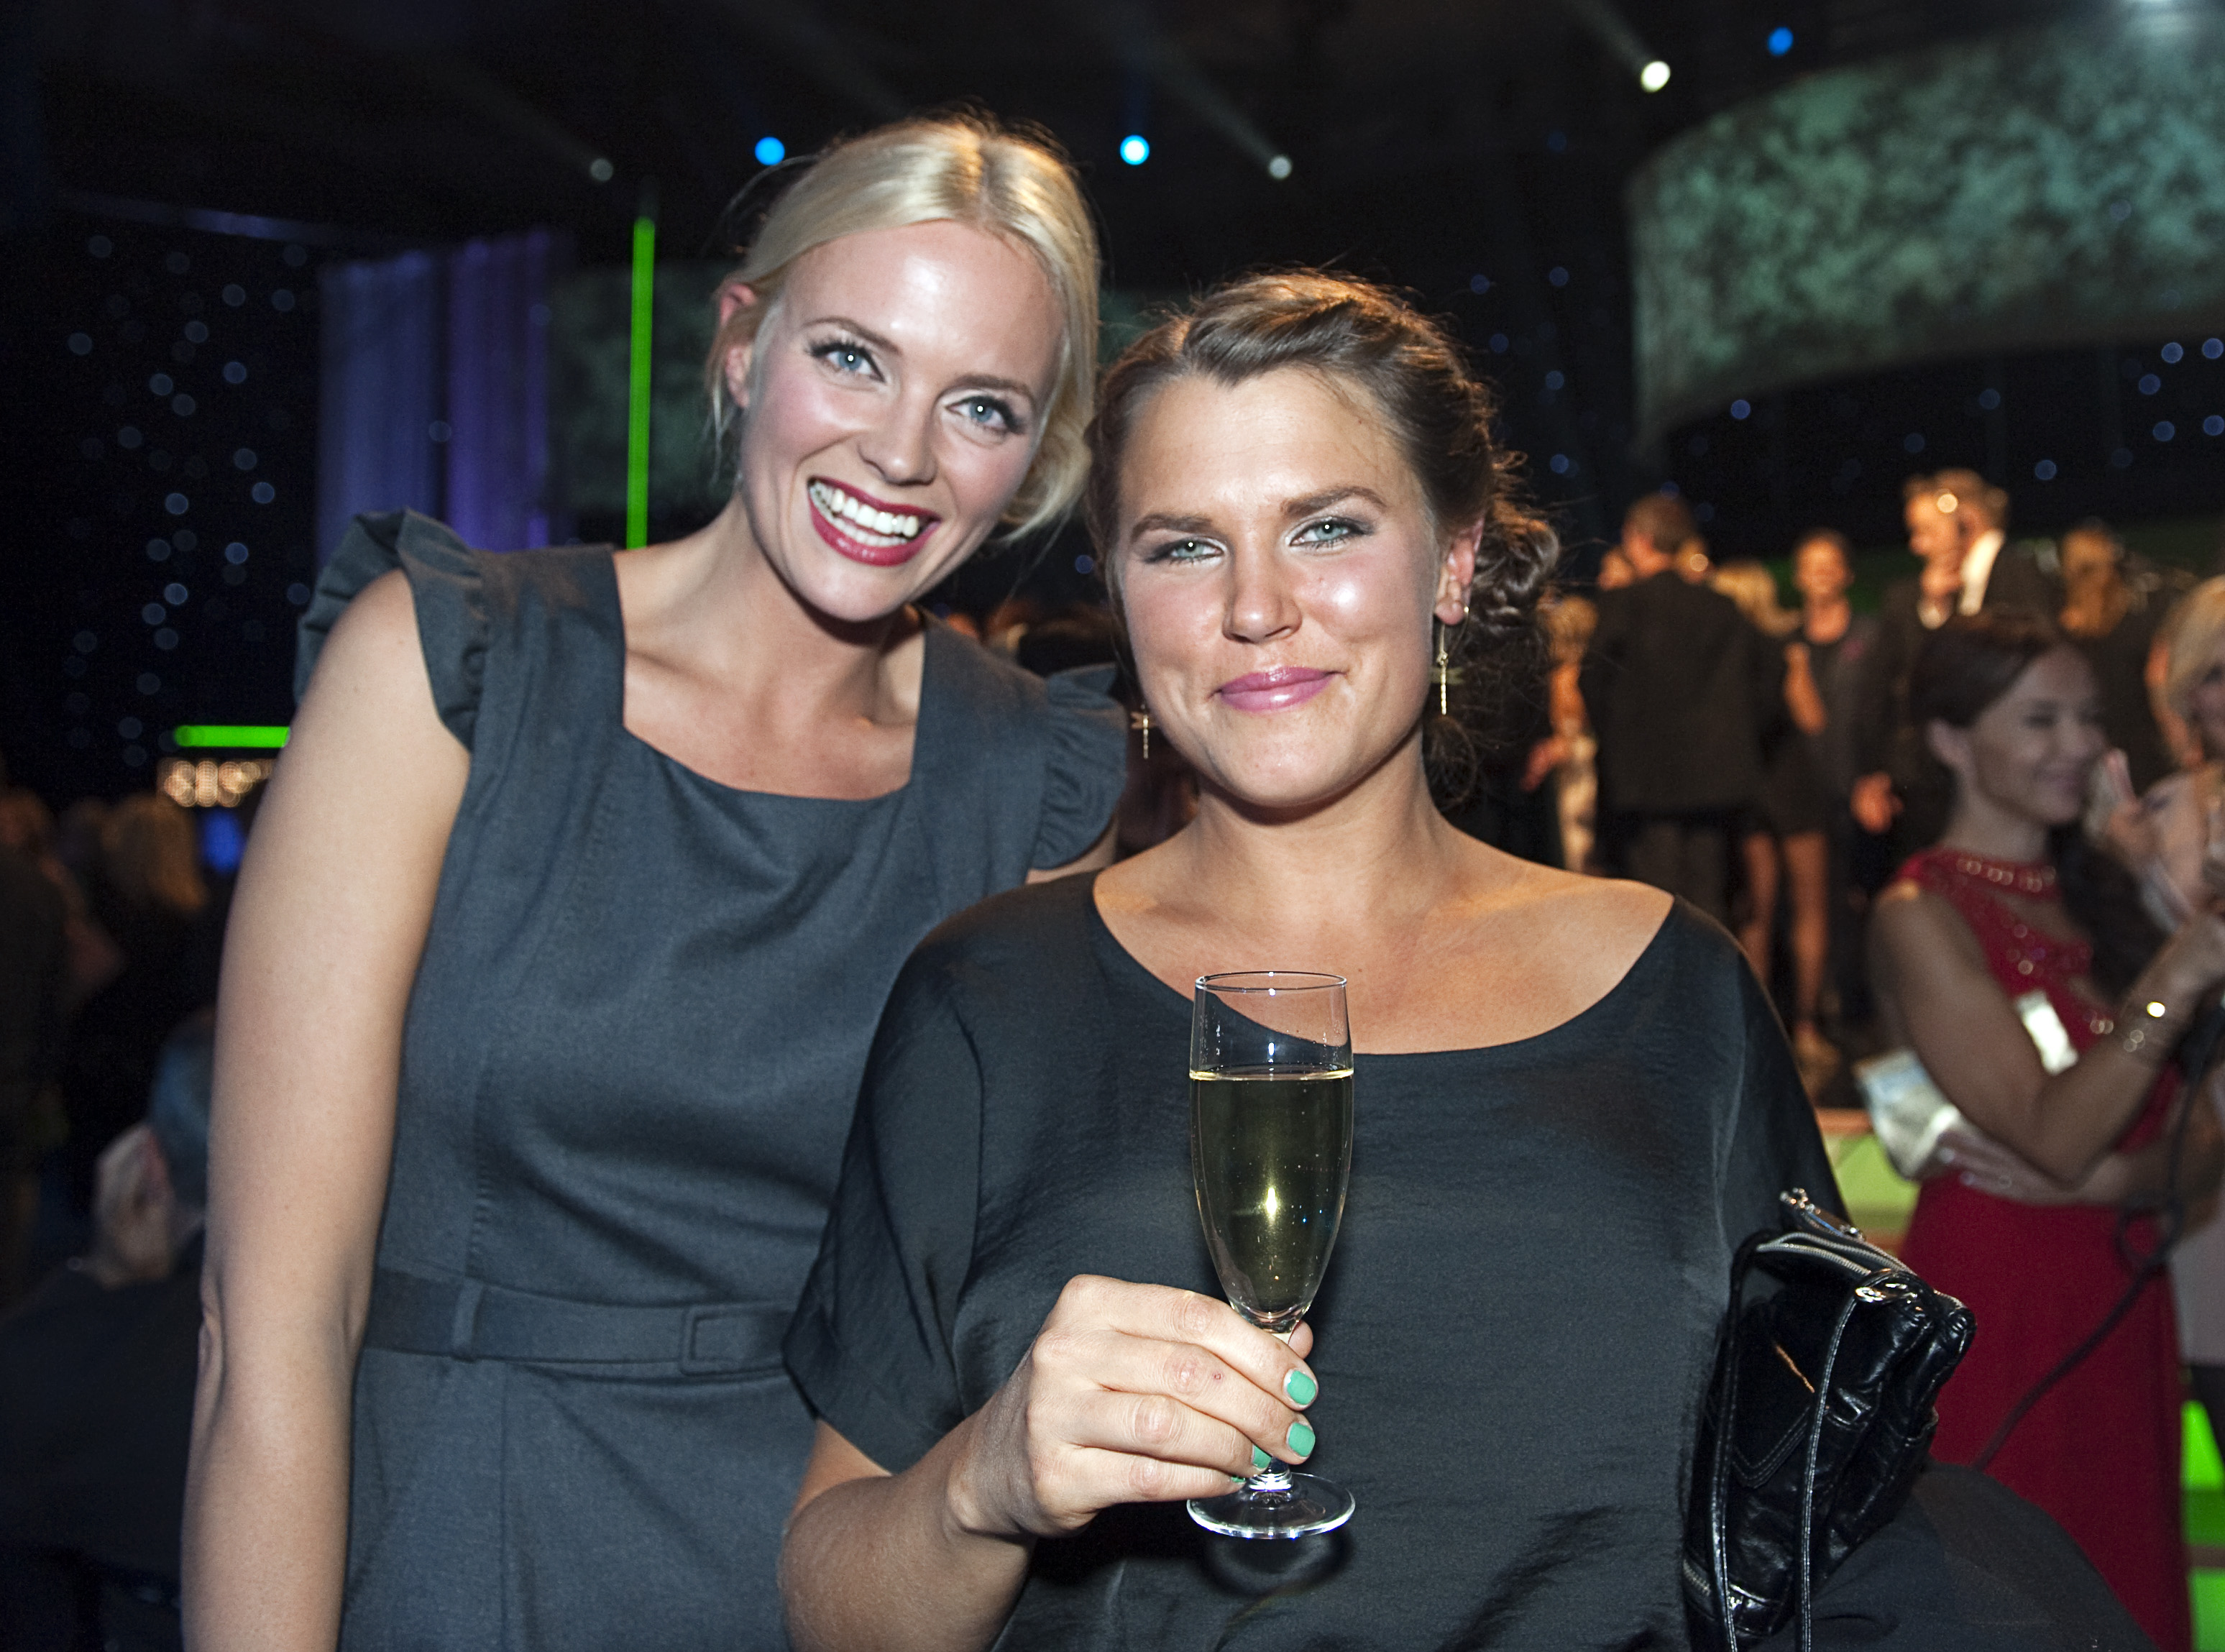 Mia Skäringer och Josefin Bornebusch från Solsidan tog emot Kristallerna för årets program och årets humorprogram